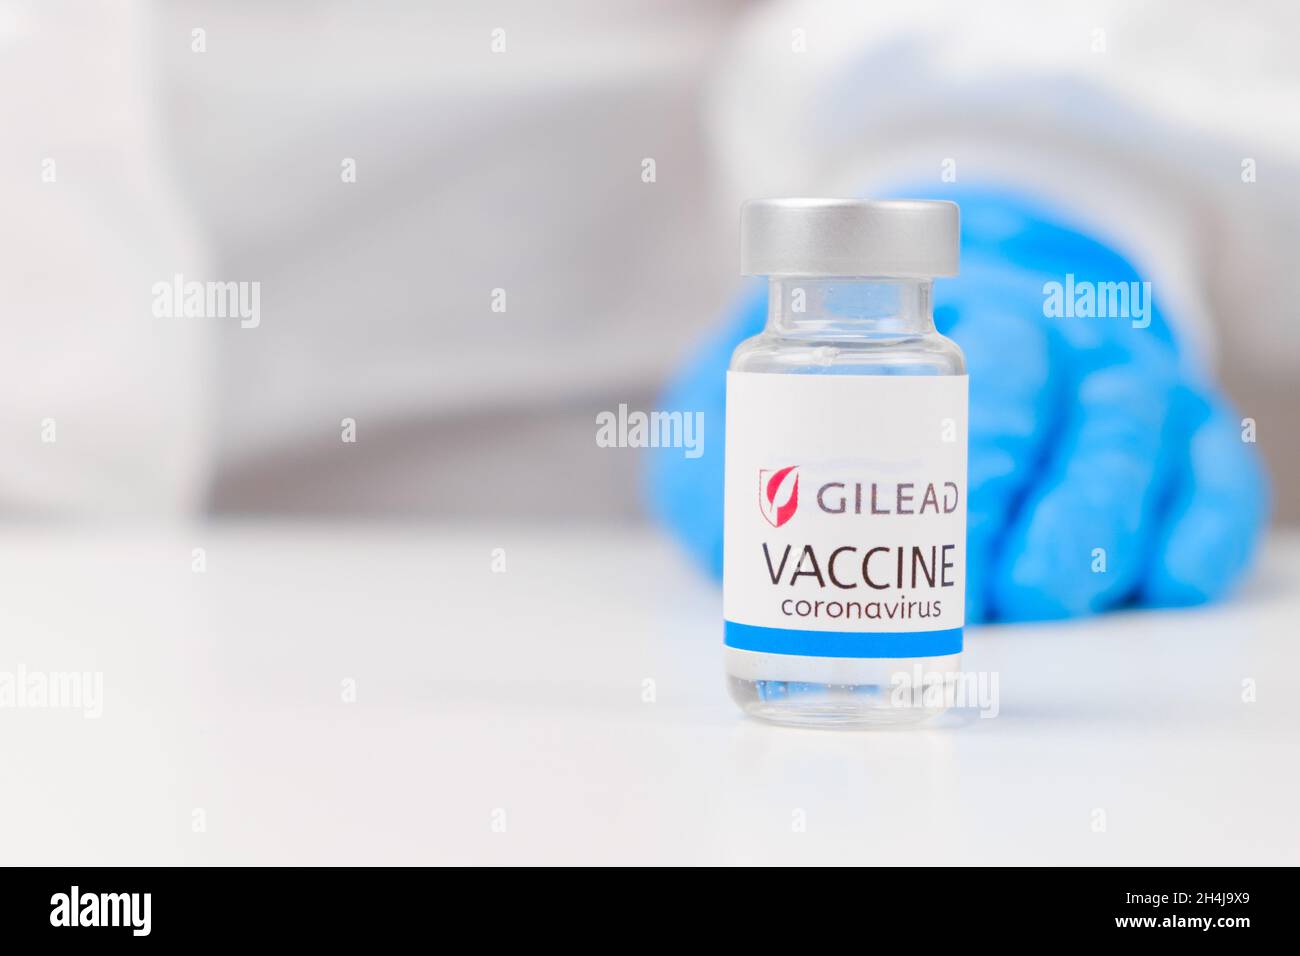 Vaccino Gilead contro SARS-Cov-2, coronavirus o Covid-19 messo sul tavolo da un operatore medico nei guanti di gomma, marzo 2021, San Francisco, USA Foto Stock